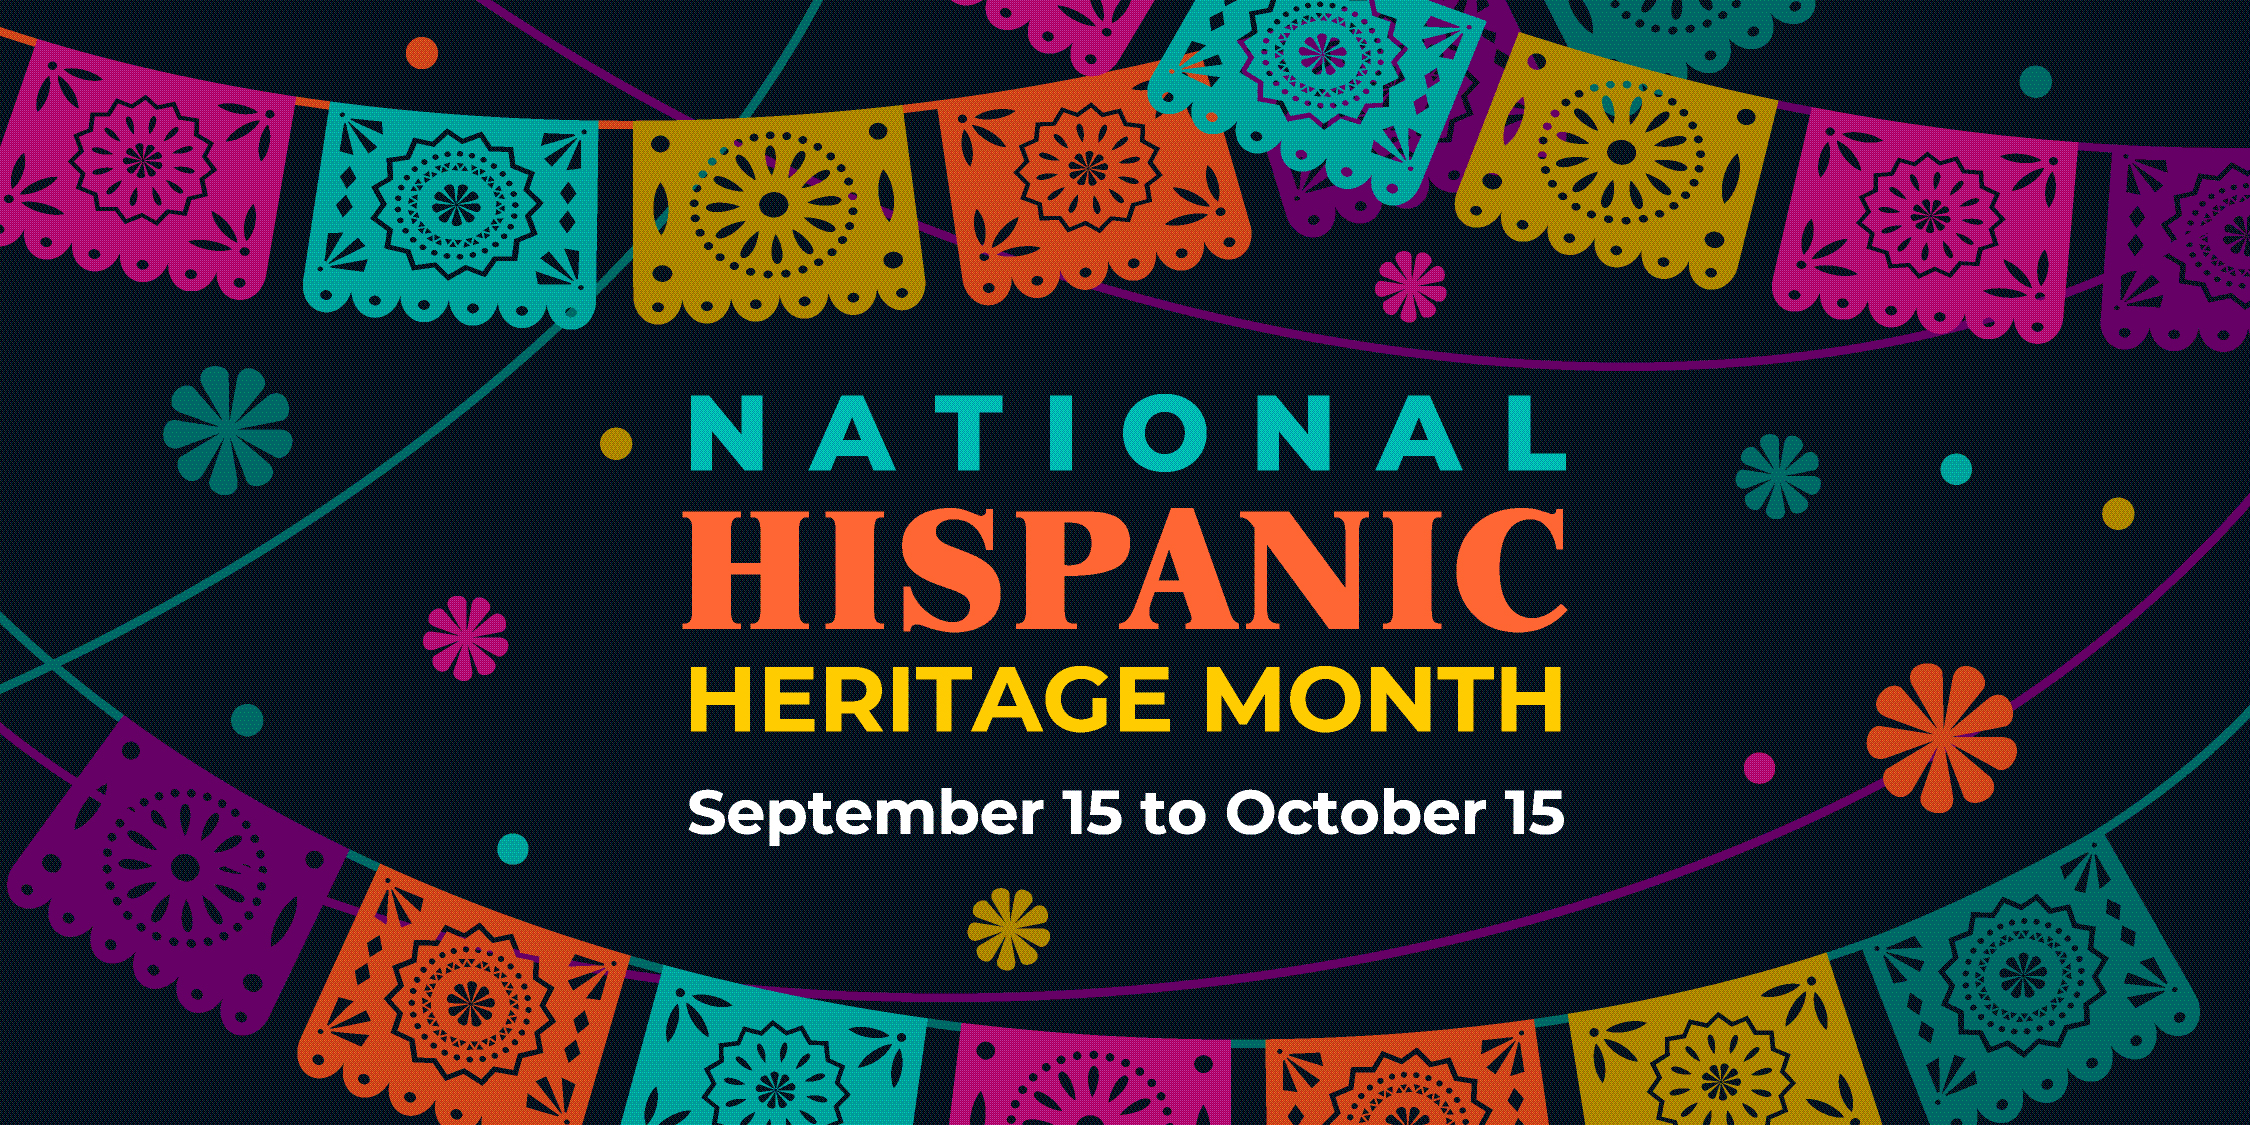 Celebrating National Hispanic Heritage Month 2019